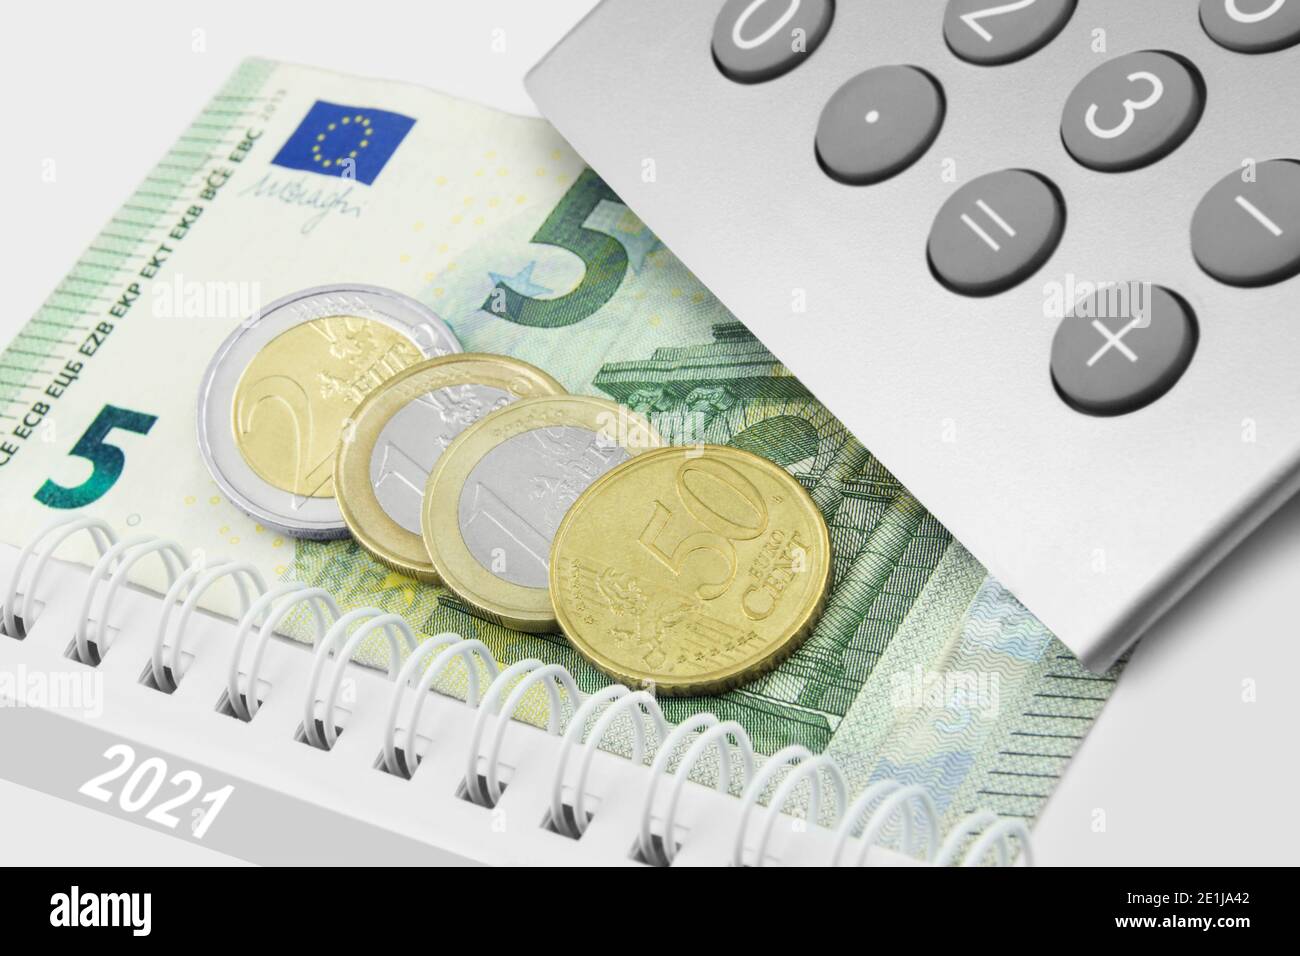 Deutschland 2021 Mindestlohn 9,50 Euro und Rechner Stock Photo